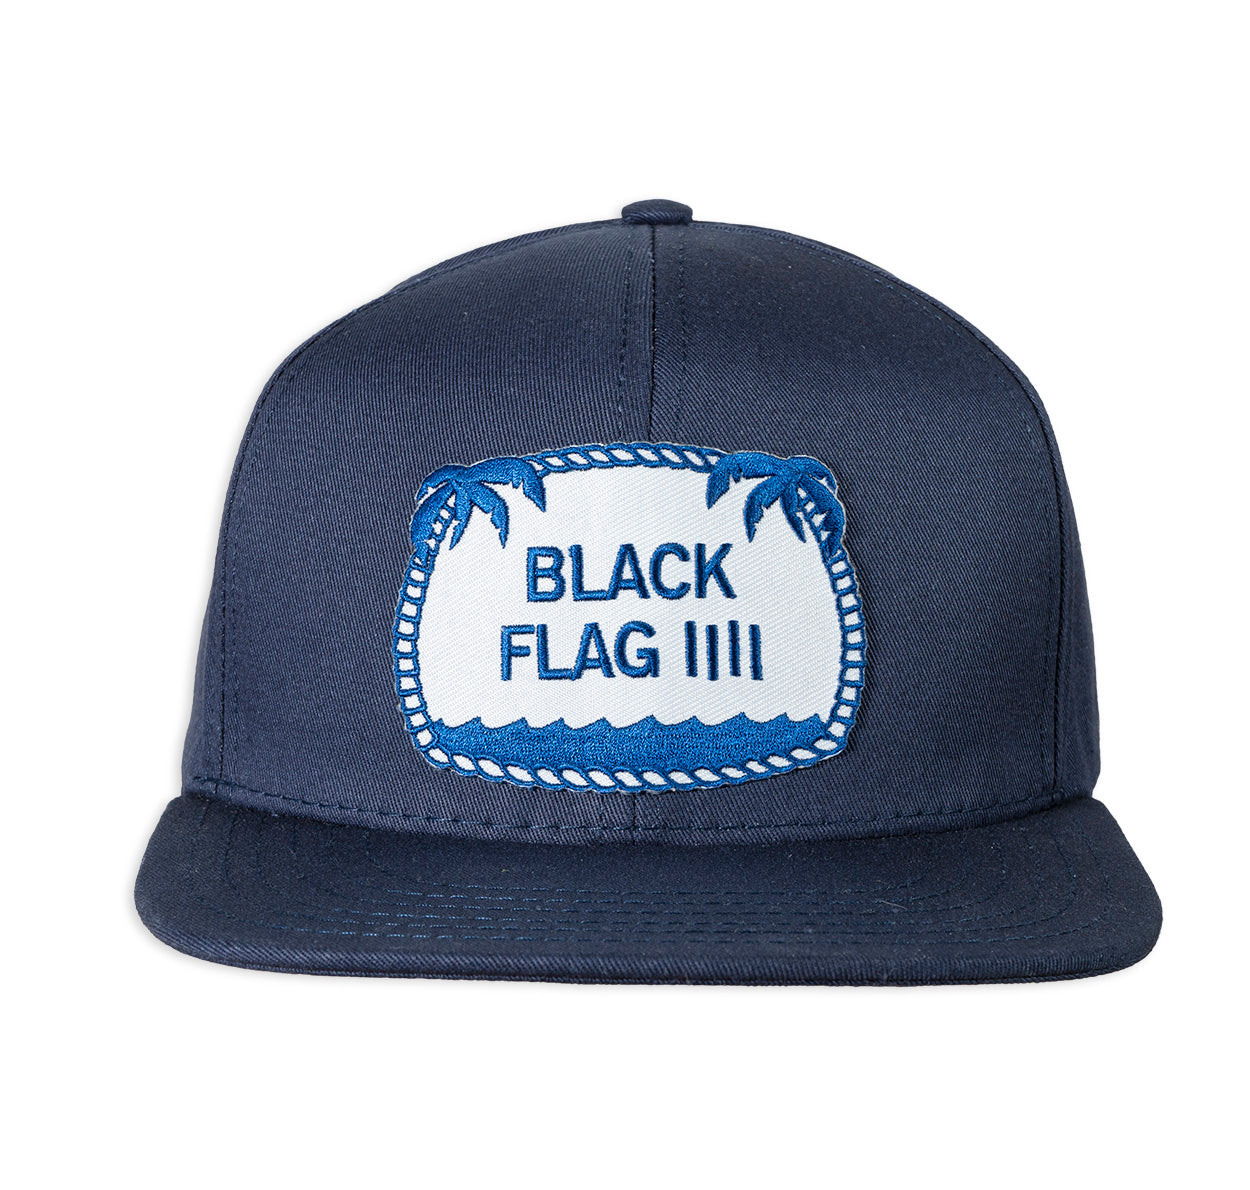 Black Flag ball cap